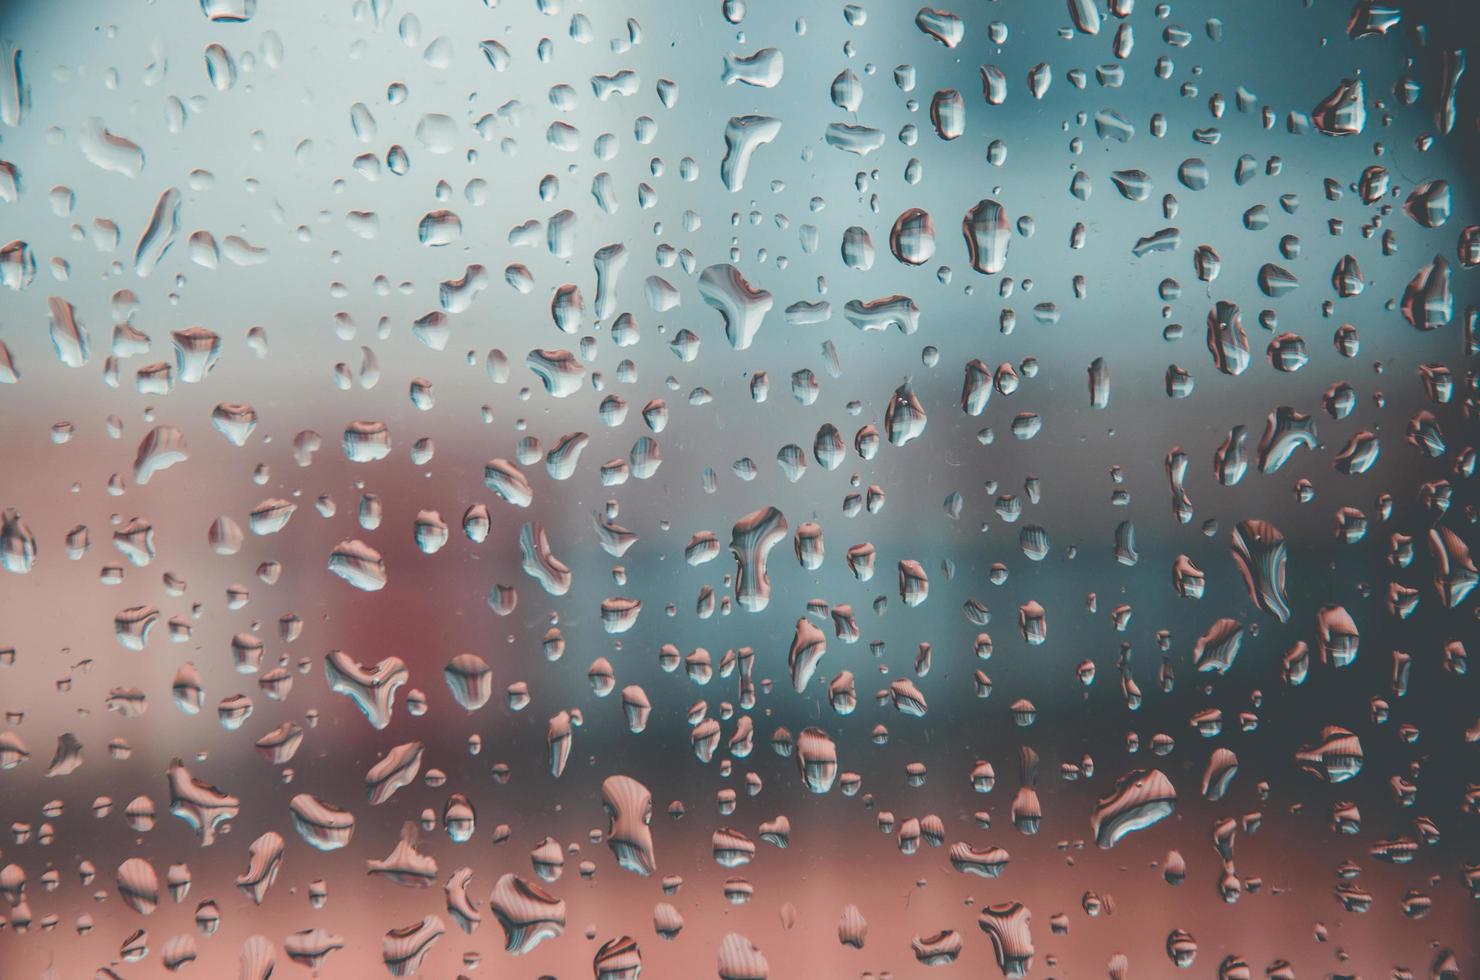 fundo e papel de parede por gota chuvosa e gotas de água na janela. foto